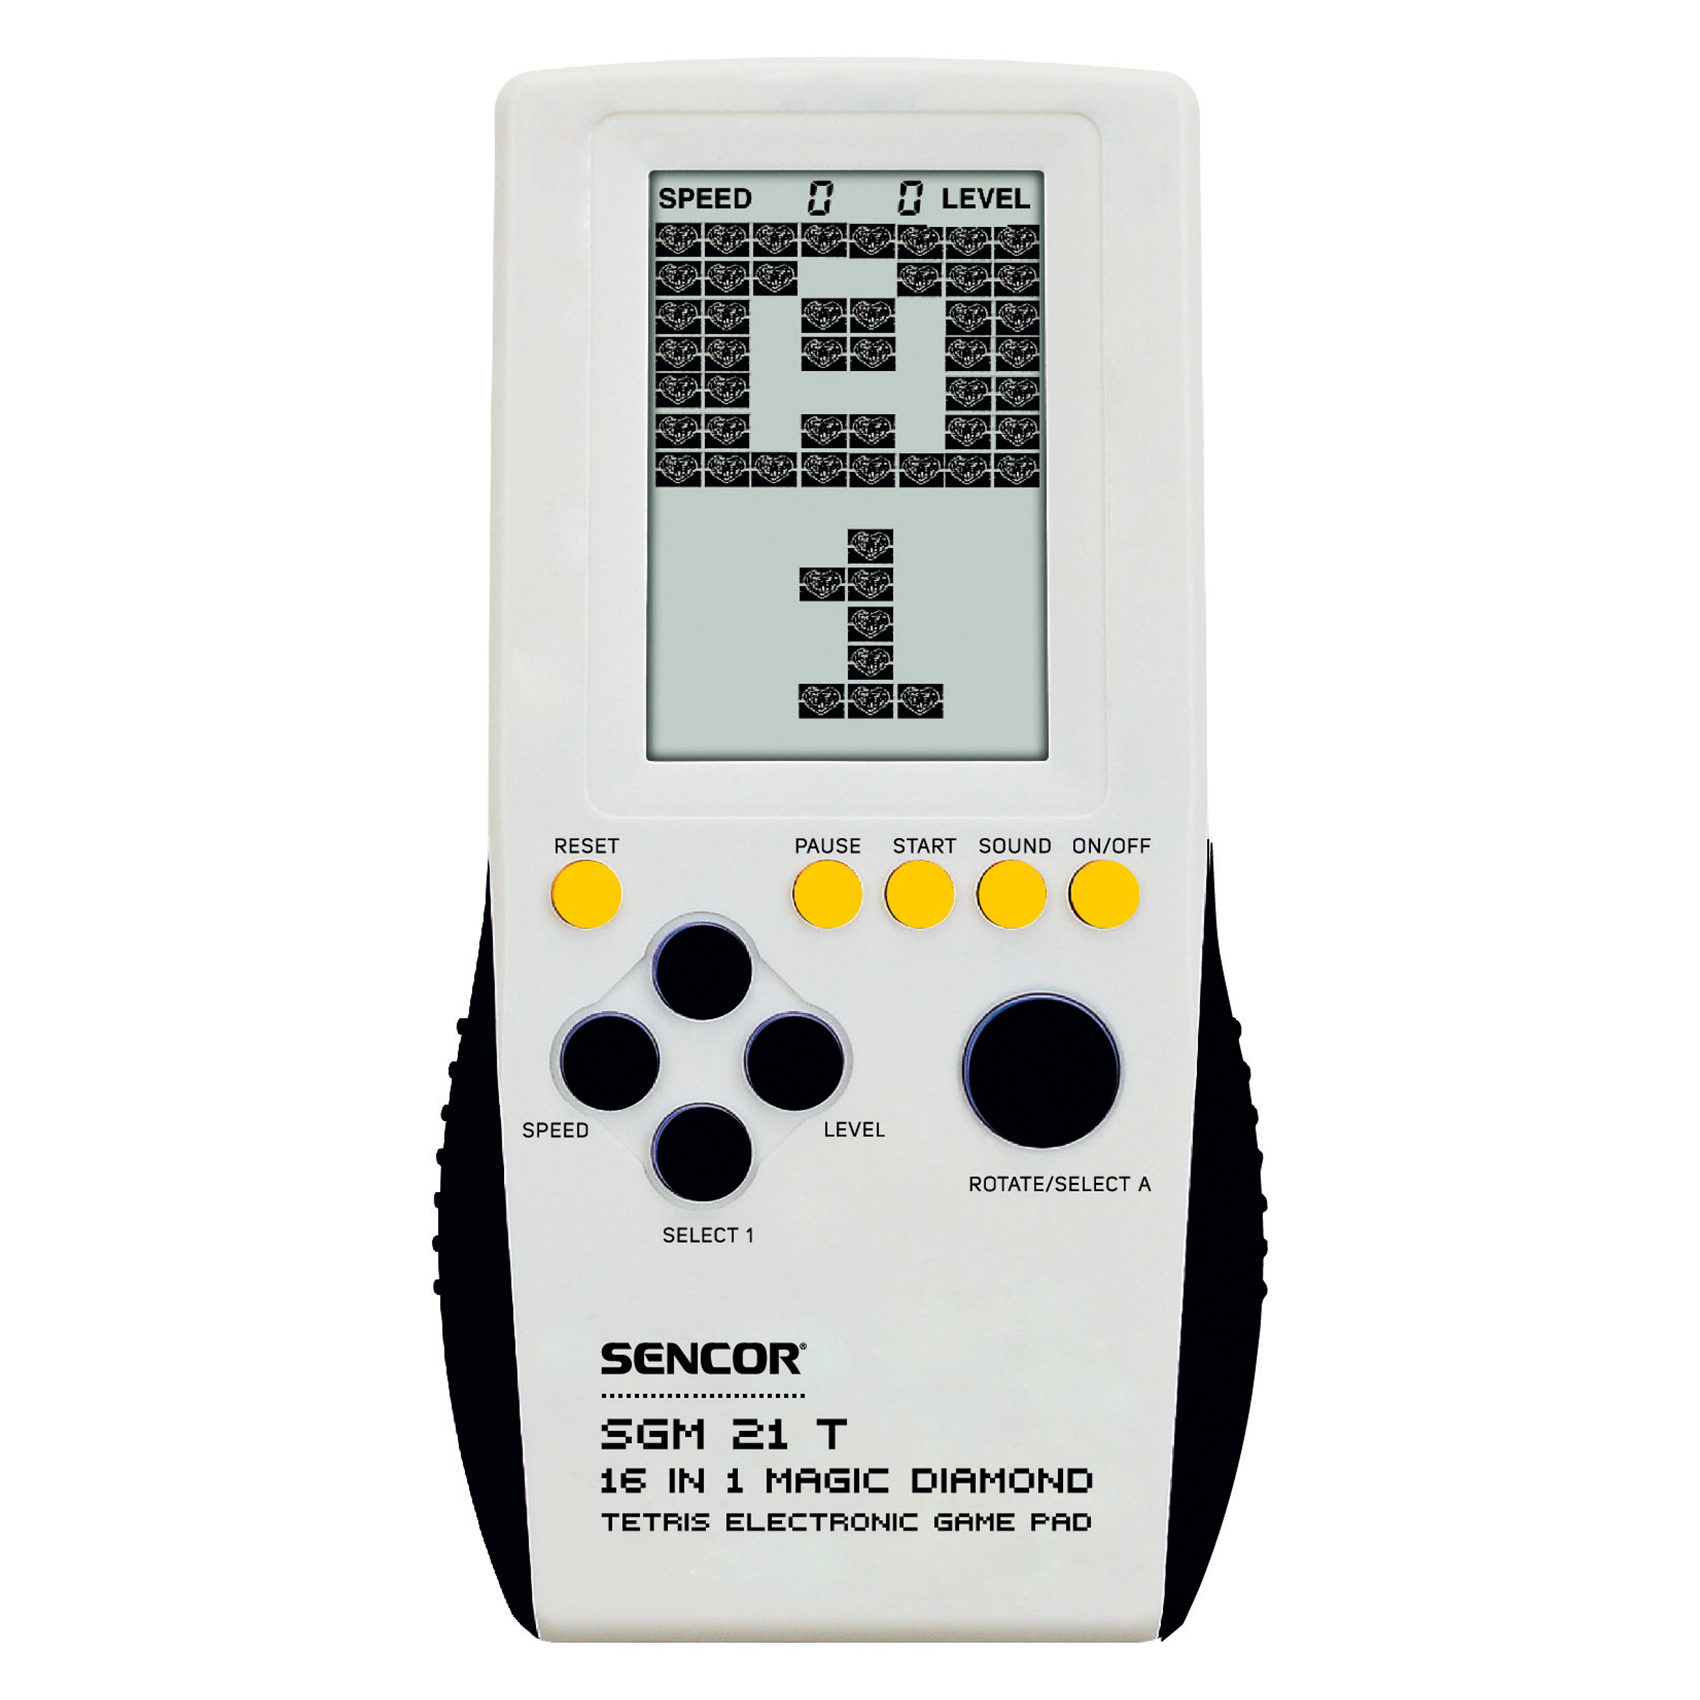 Tetris electronic game pad | SGM 21 T | Sencor